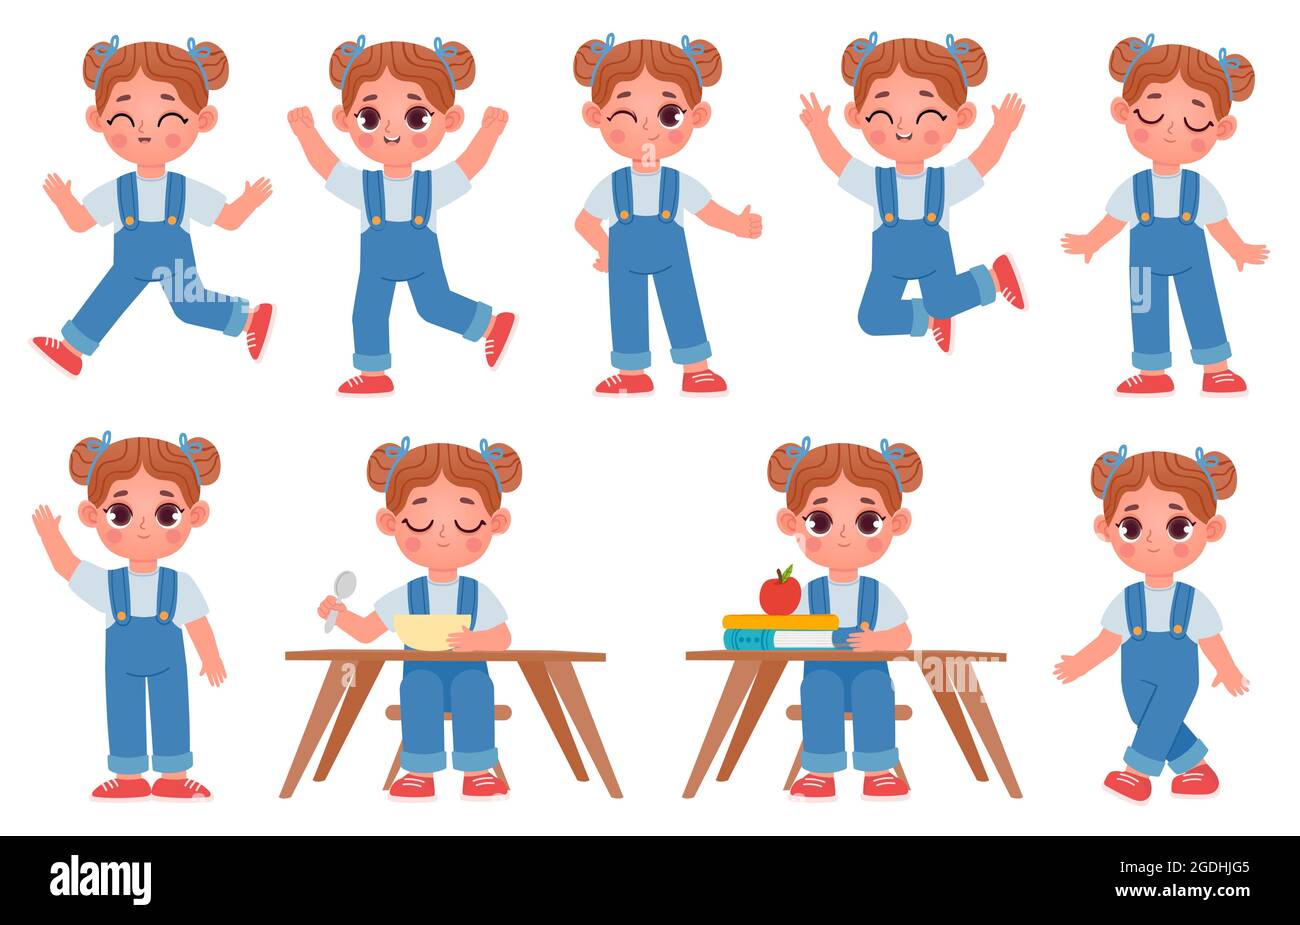 Cartoon kleines Kind Mädchen Charakter Posen und Ausdrücke. Das Schulkind sitzt mit Büchern am Tisch. Niedliche Mädchen gehen, laufen, springen und essen Vektor-Set Stock Vektor